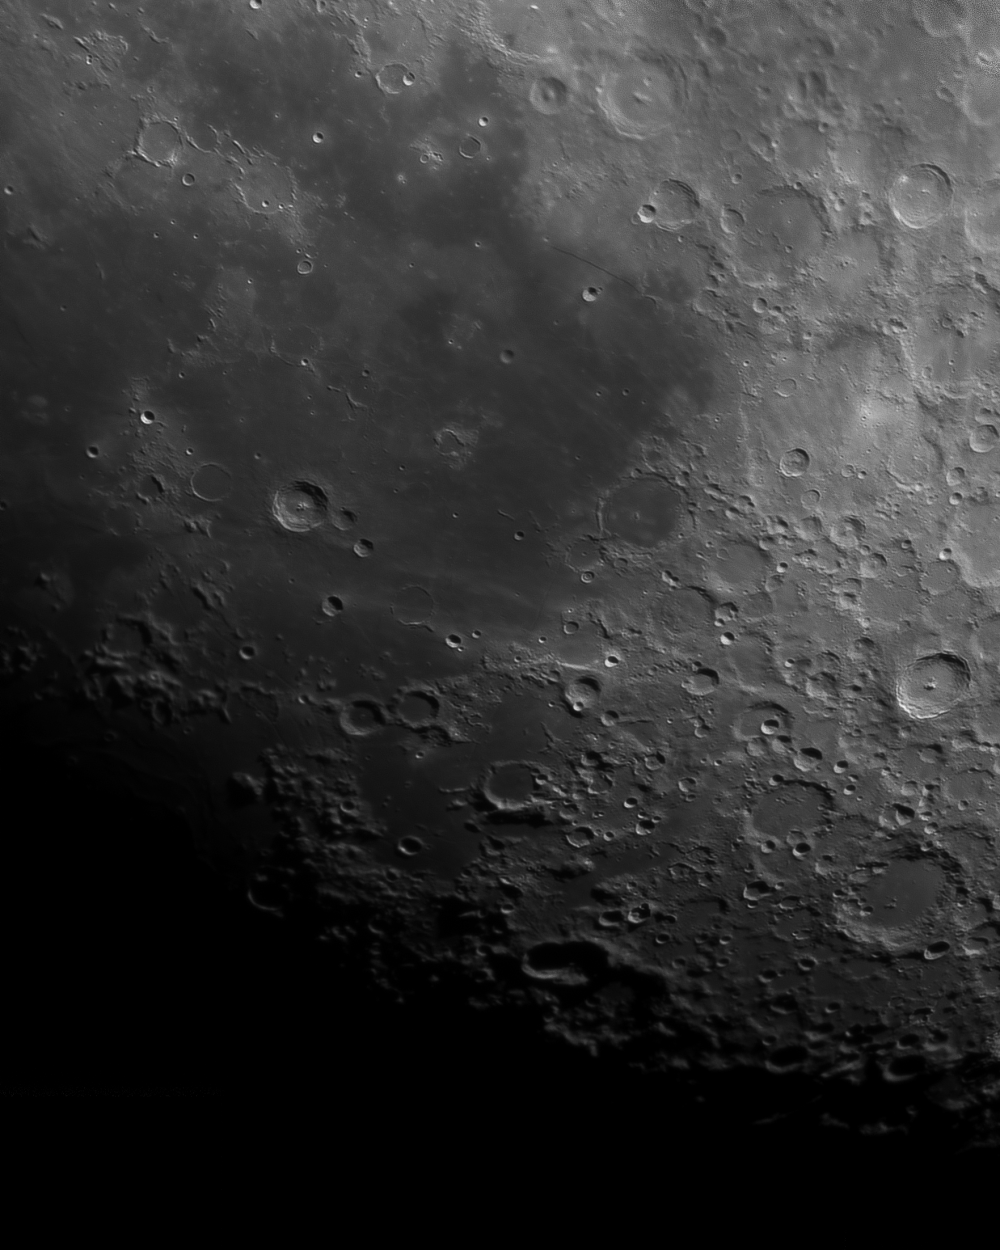 Часть панорамы Луны (Кратеры: Тихо, Питат, Клавий, Гесиод, Буллиальд. Море Облаков)